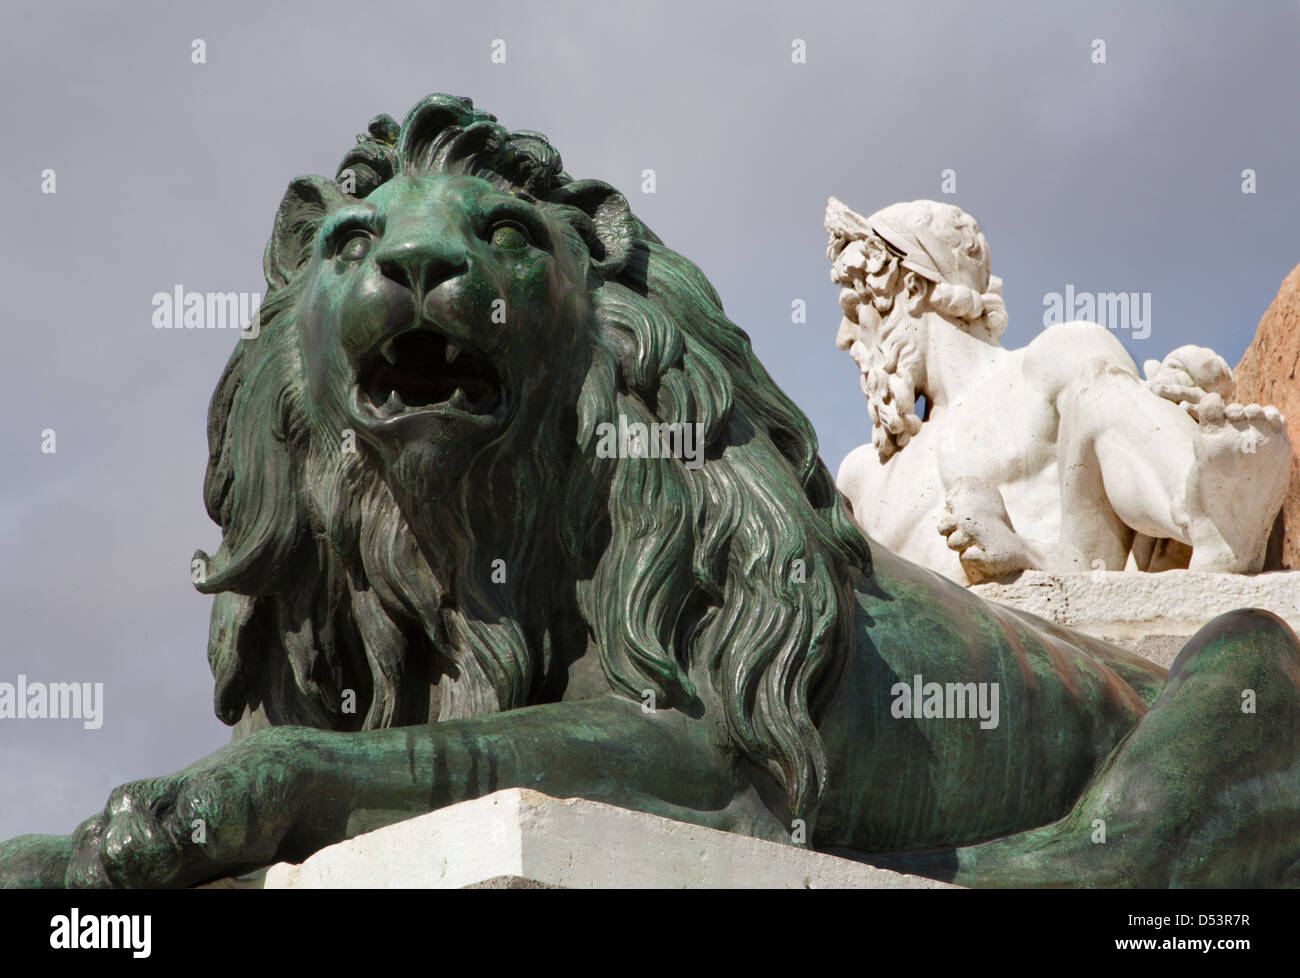 El rey leon fotografías e imágenes de alta resolución - Alamy